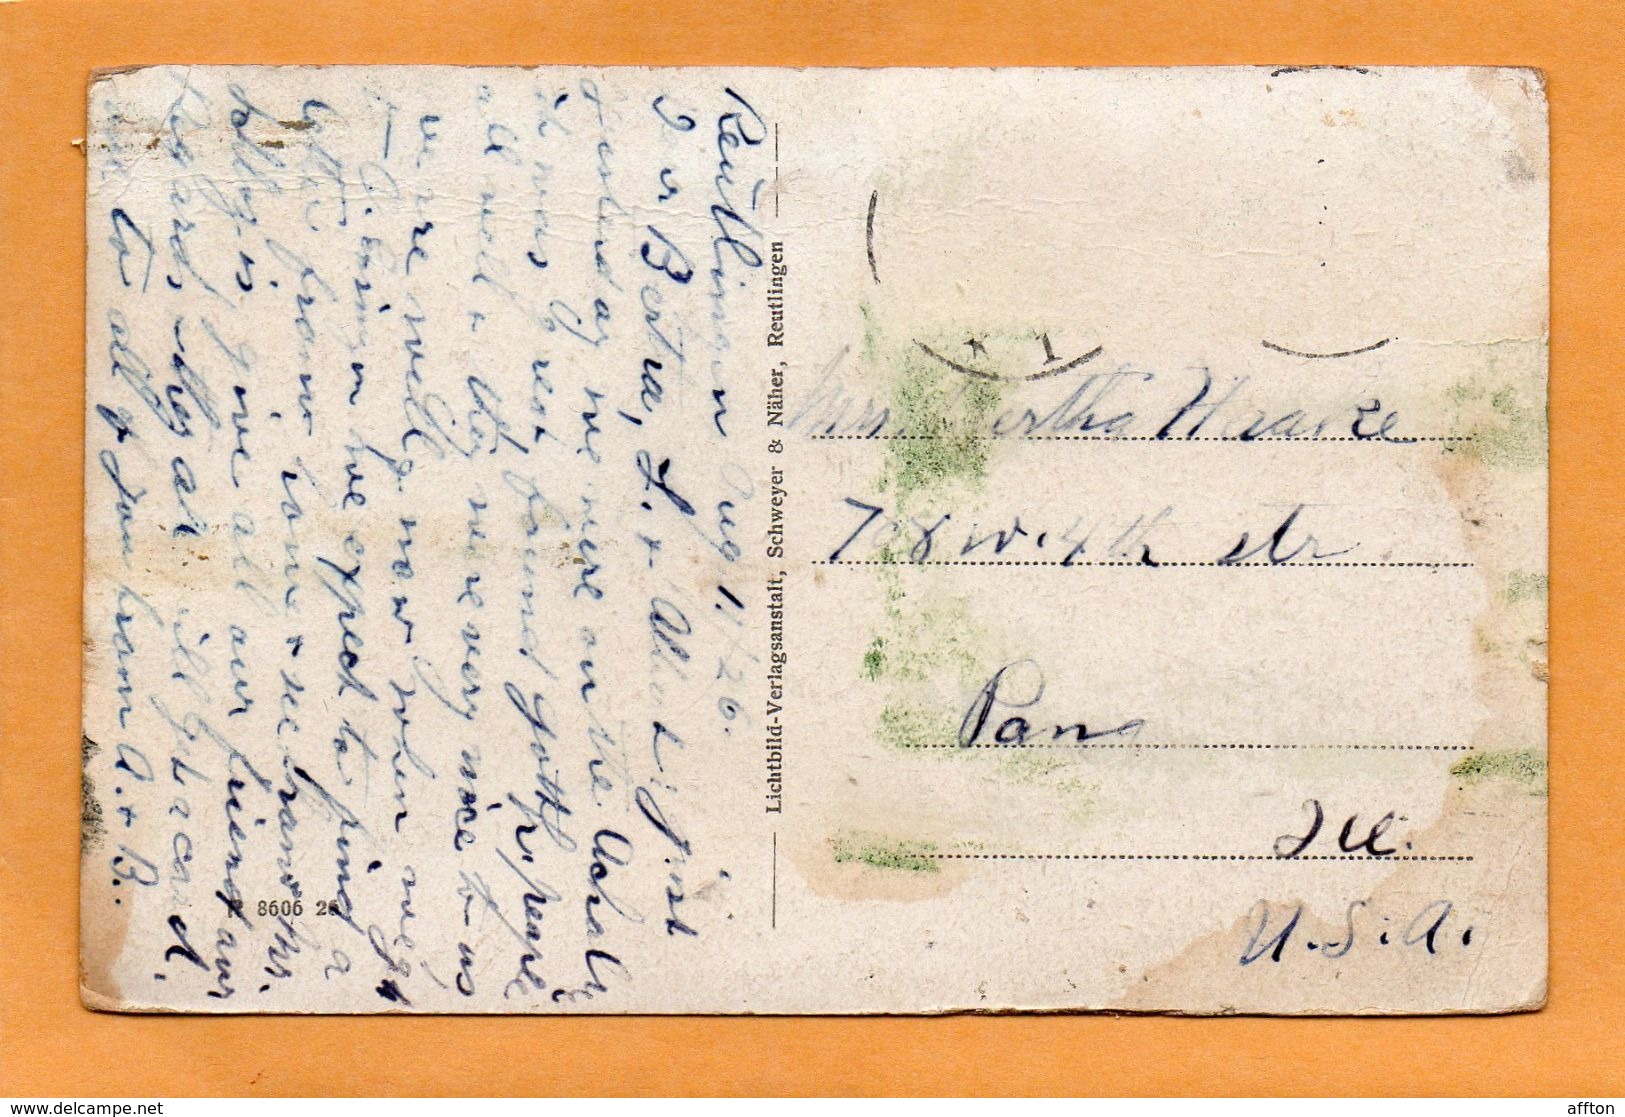 Achalm Bei Reutlingen 1910 Postcard - Reutlingen